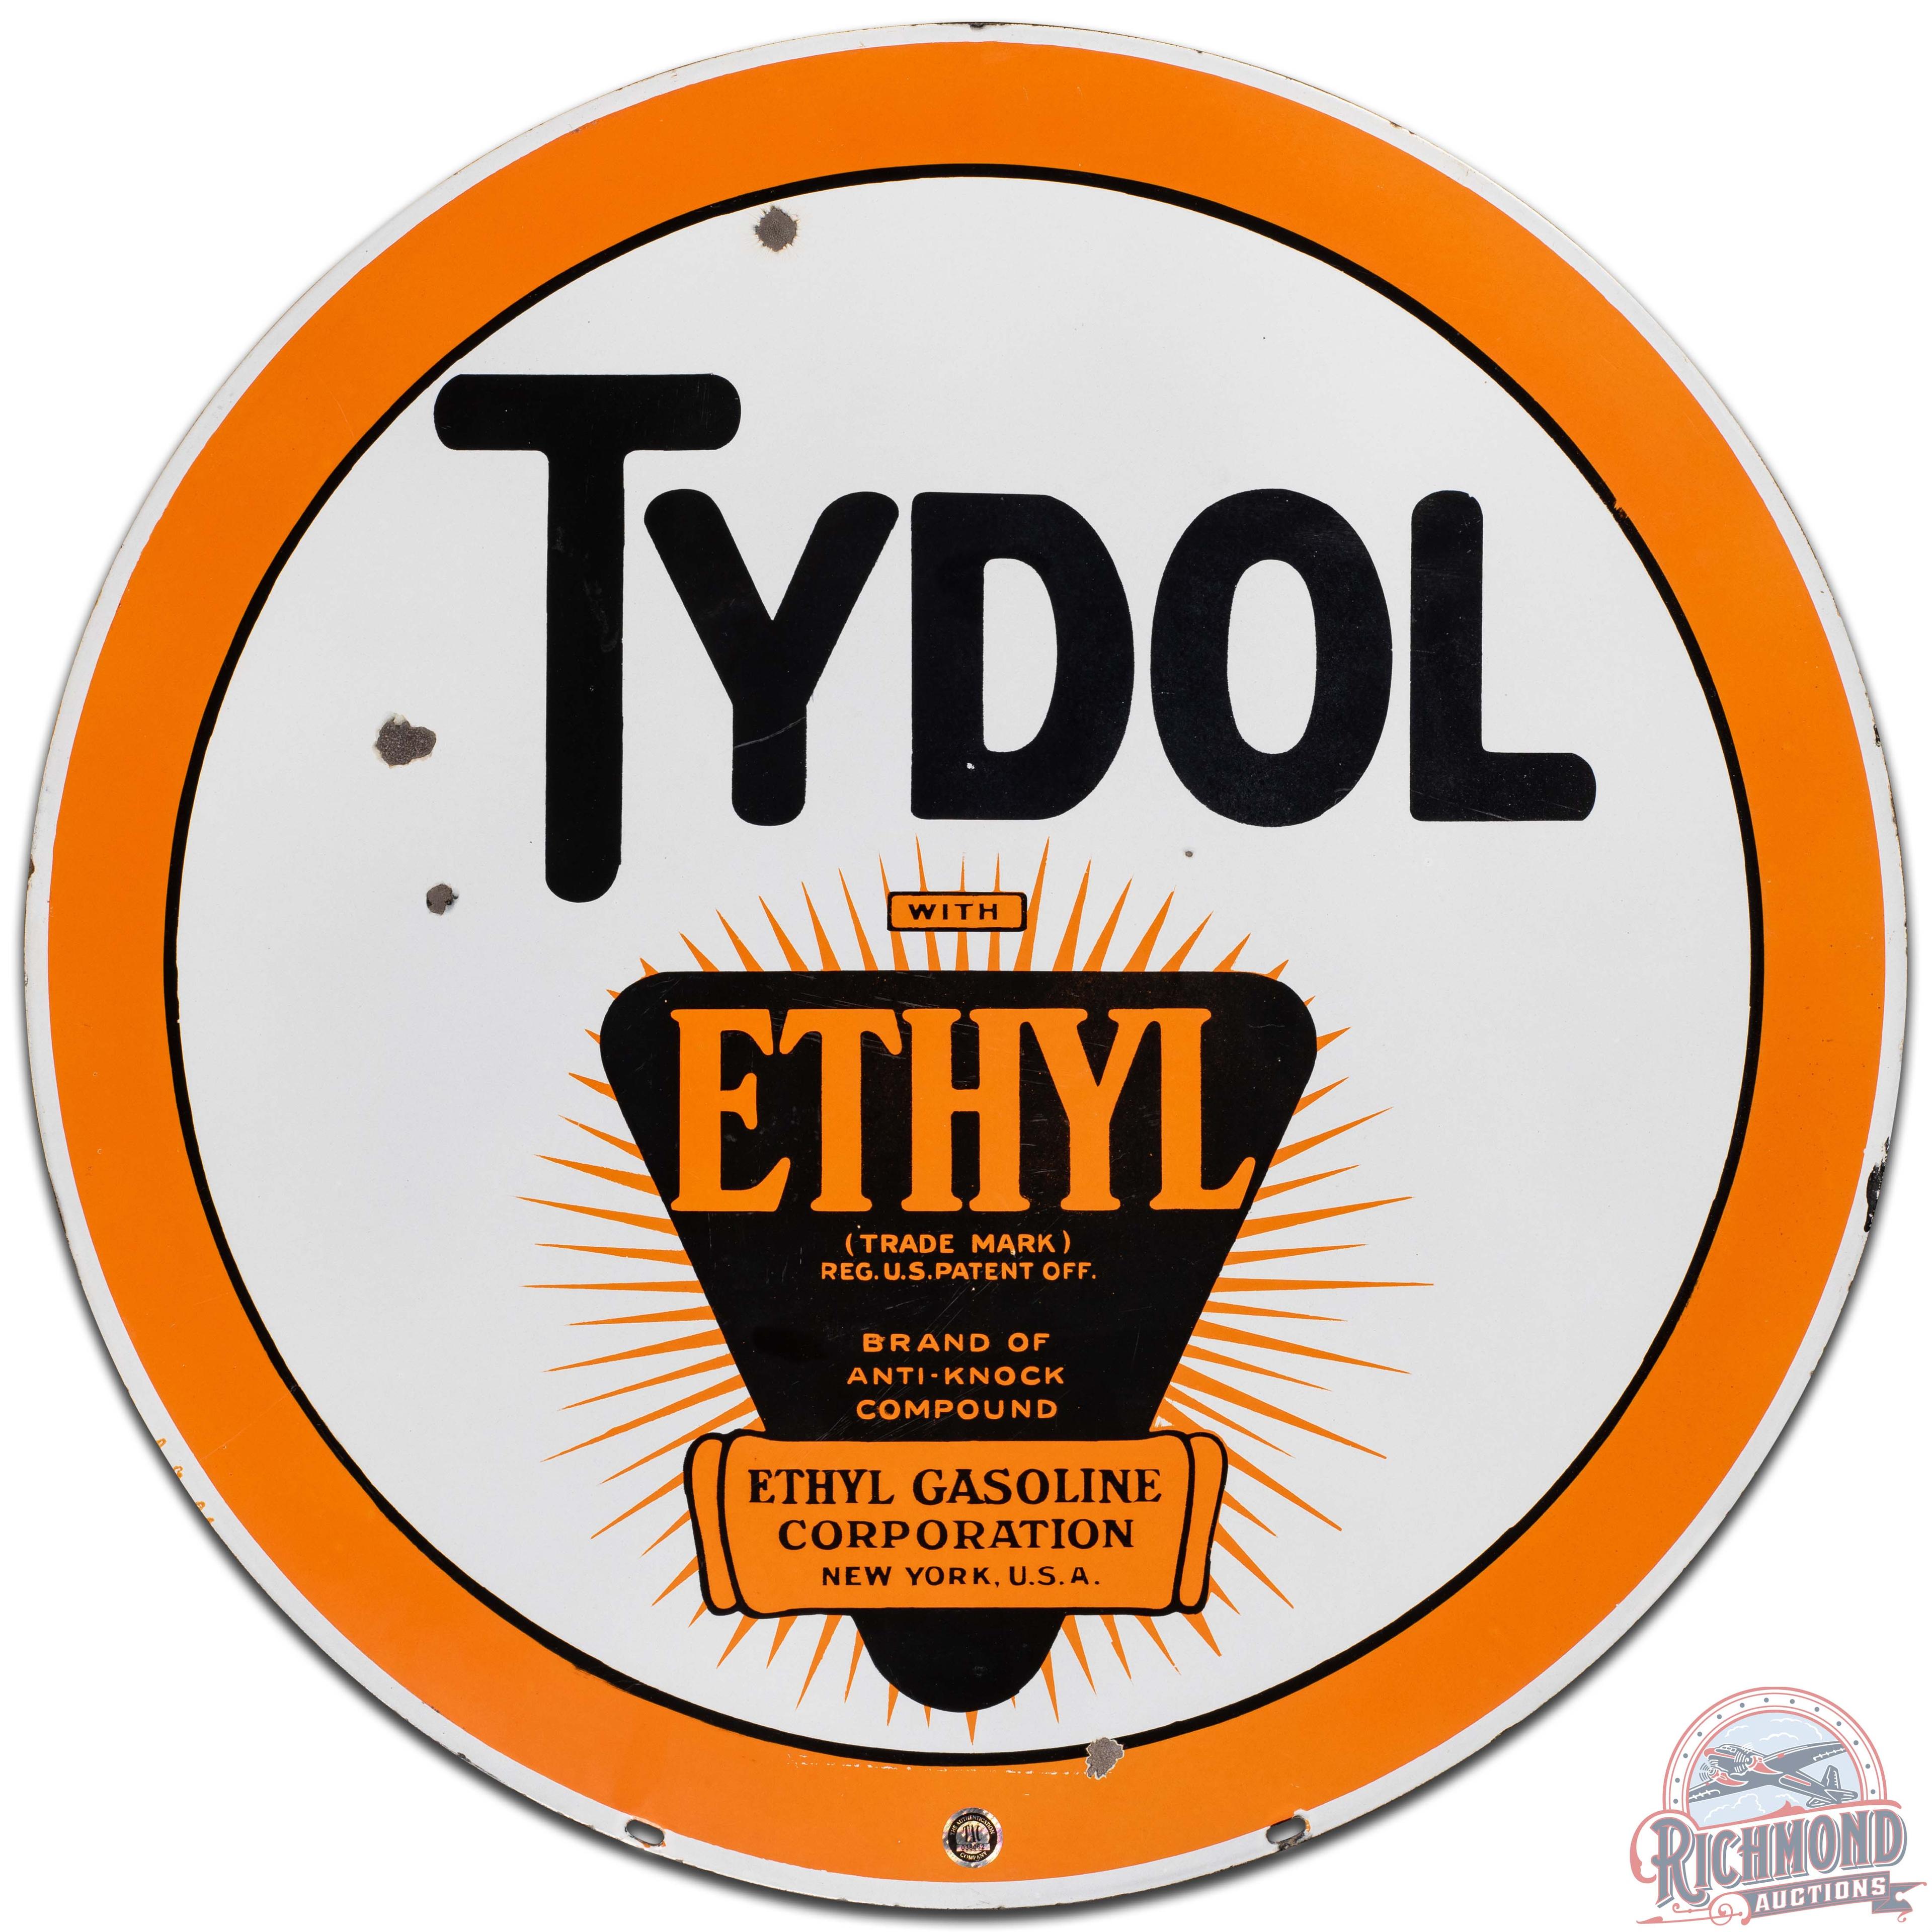 Tydol Ethyl Gasoline 30" DS Porcelain Sign